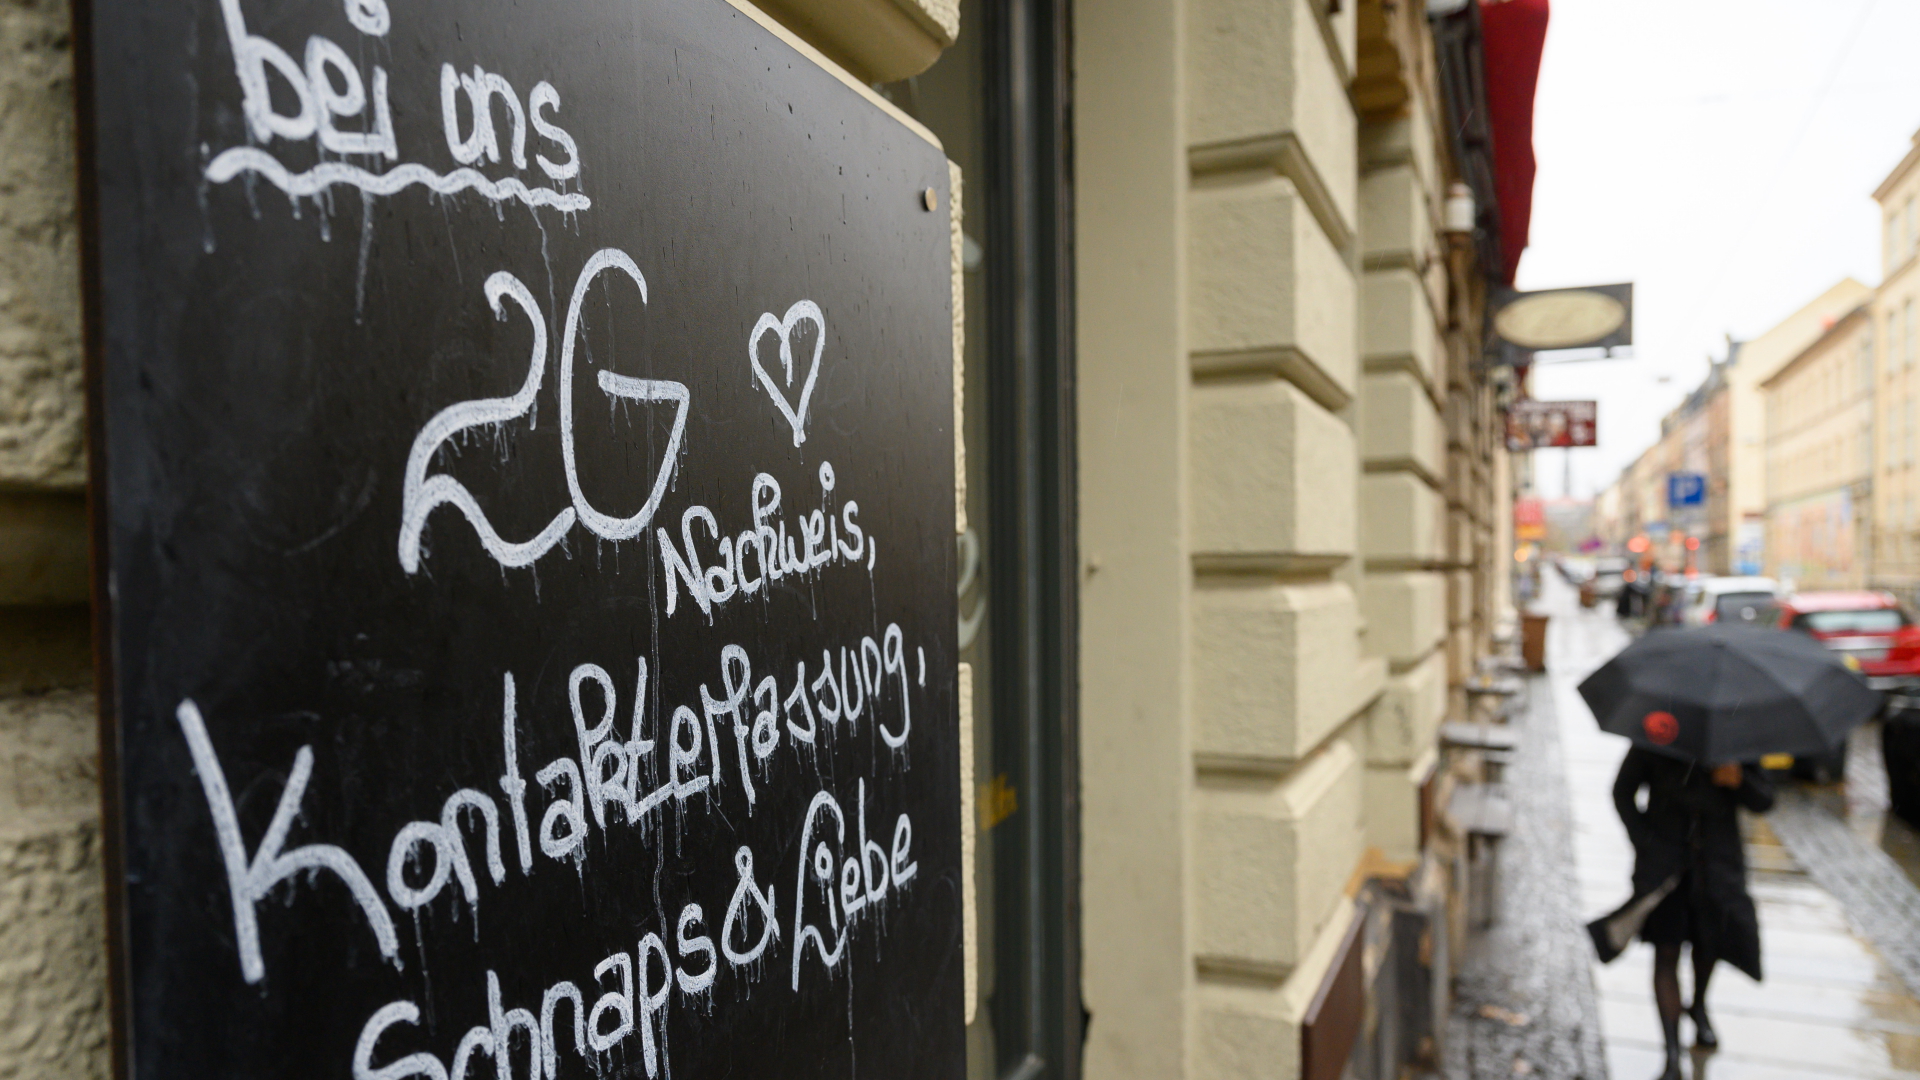 : "Bei uns 2G Nachweis, Kontakterfassung, Schnaps & Liebe" steht auf einem Schild an einer Bar in der Dresdner Neustadt